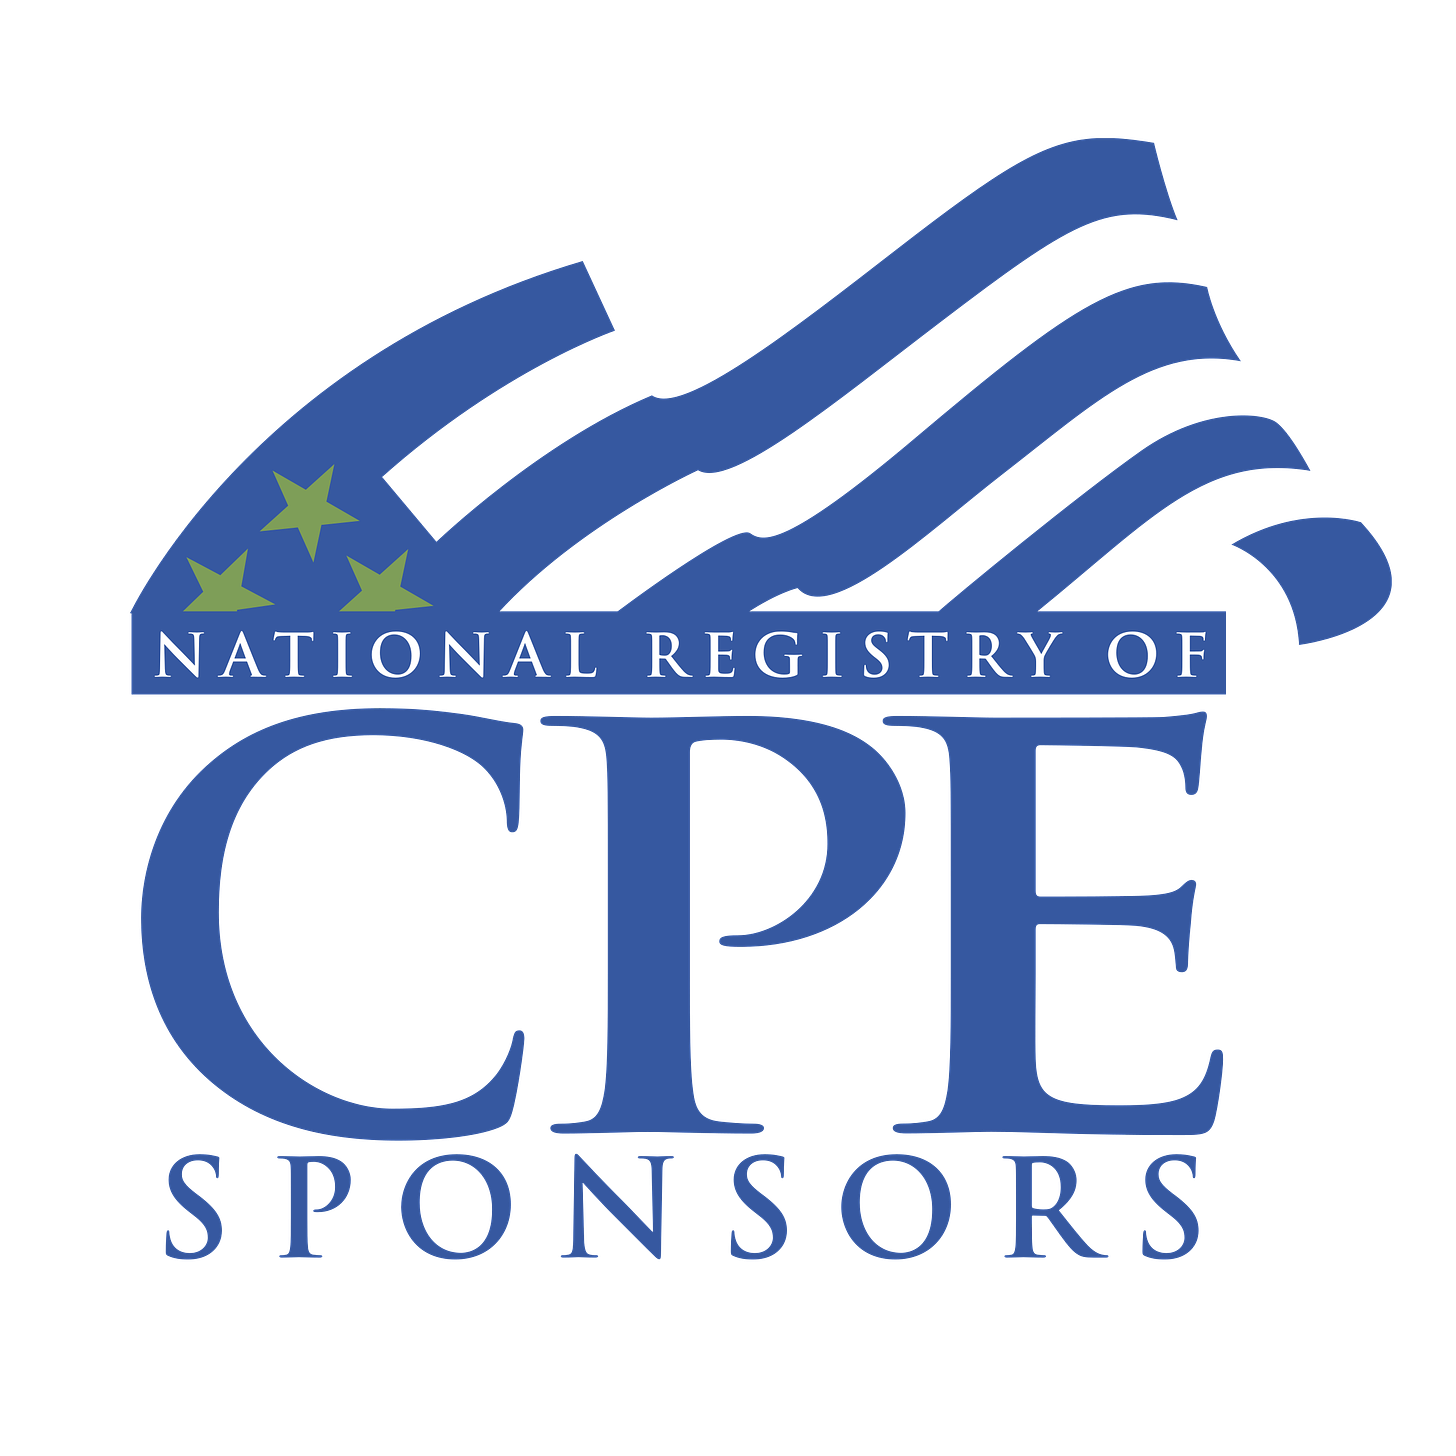 National Registry of CPE Sponsors Logo PNG Transparent & SVG Vector ...